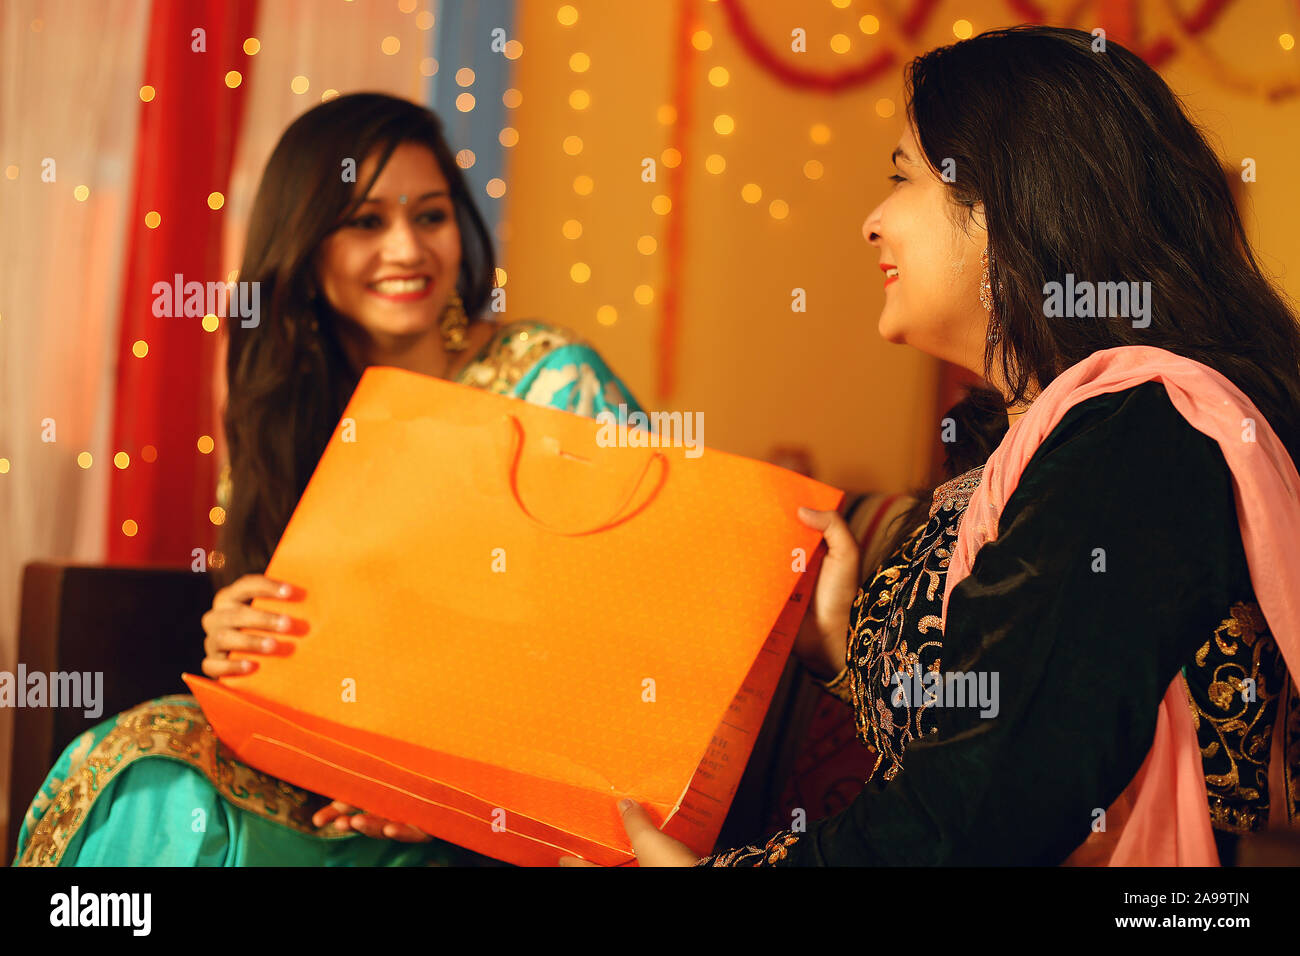 Jolie jeune femme indienne portant des vêtements ethniques traditionnels cadeau donner à une femme, plus de flou d'arrière-plan de fête. Banque D'Images